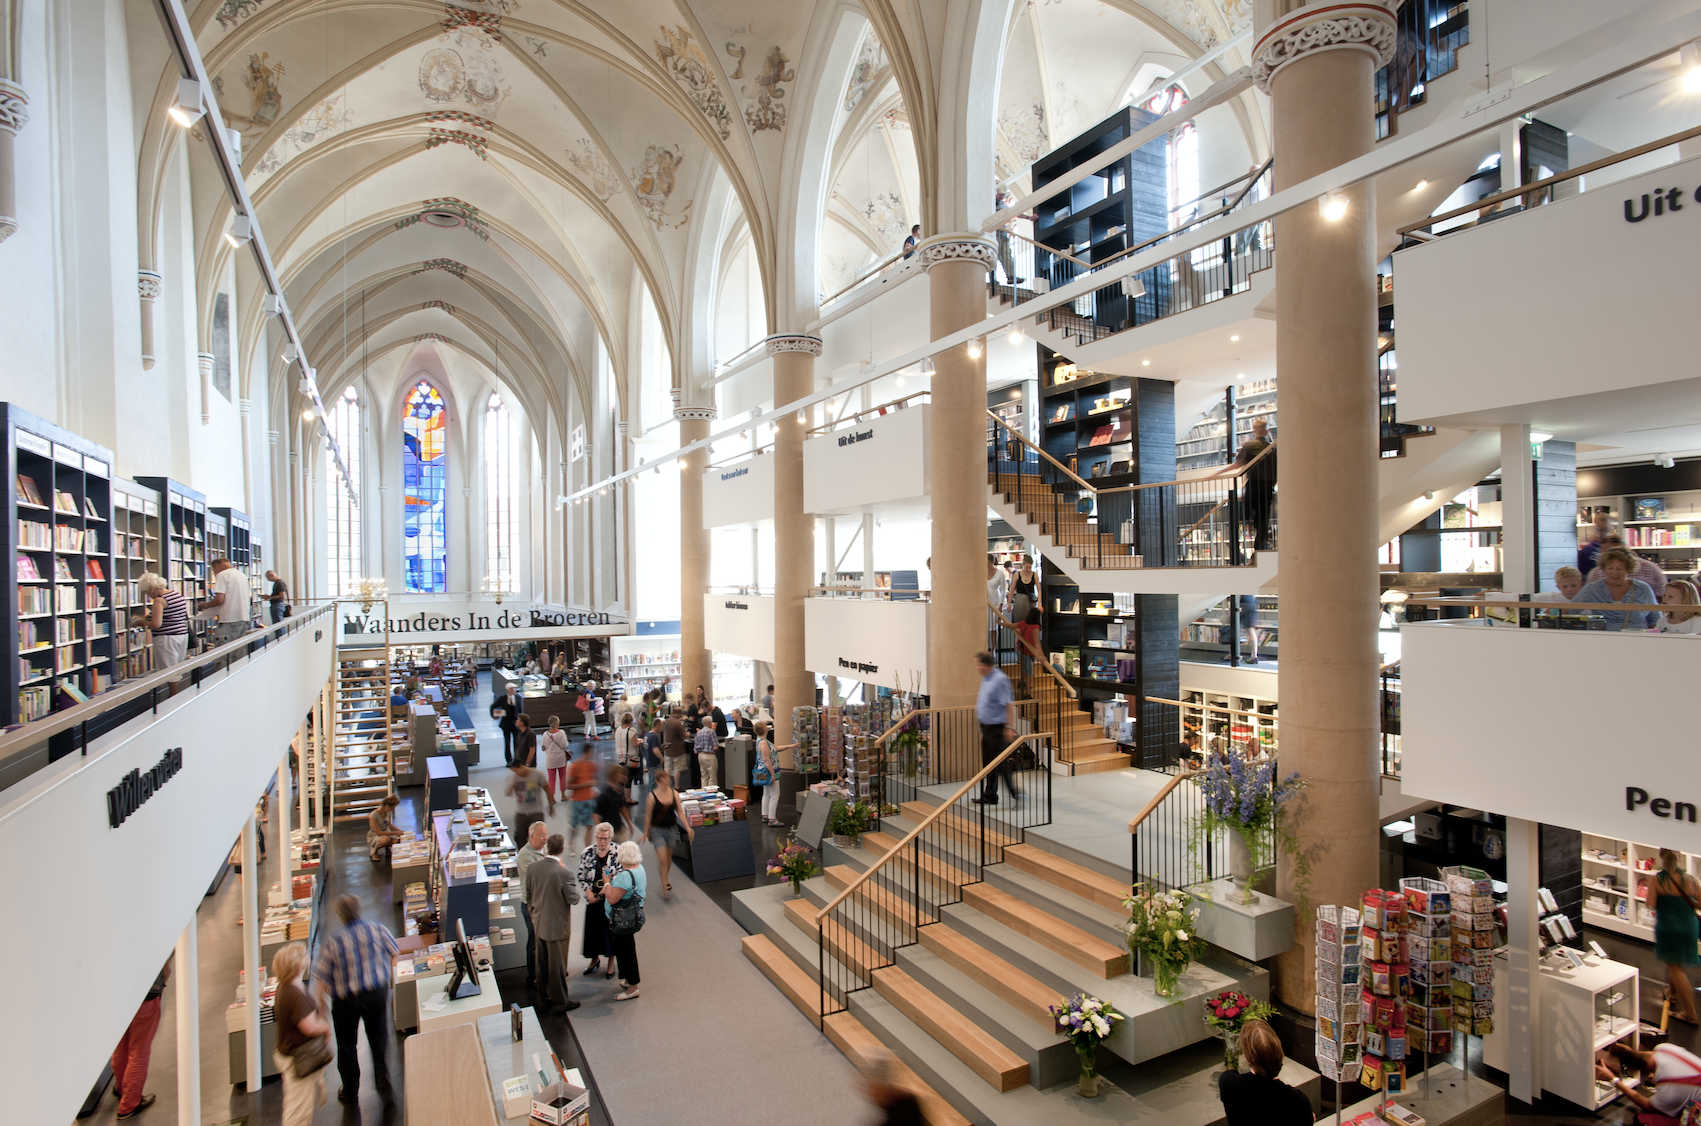 Promoten Onbelangrijk Rekwisieten Dit zijn de mooiste boekenwinkels van Nederland